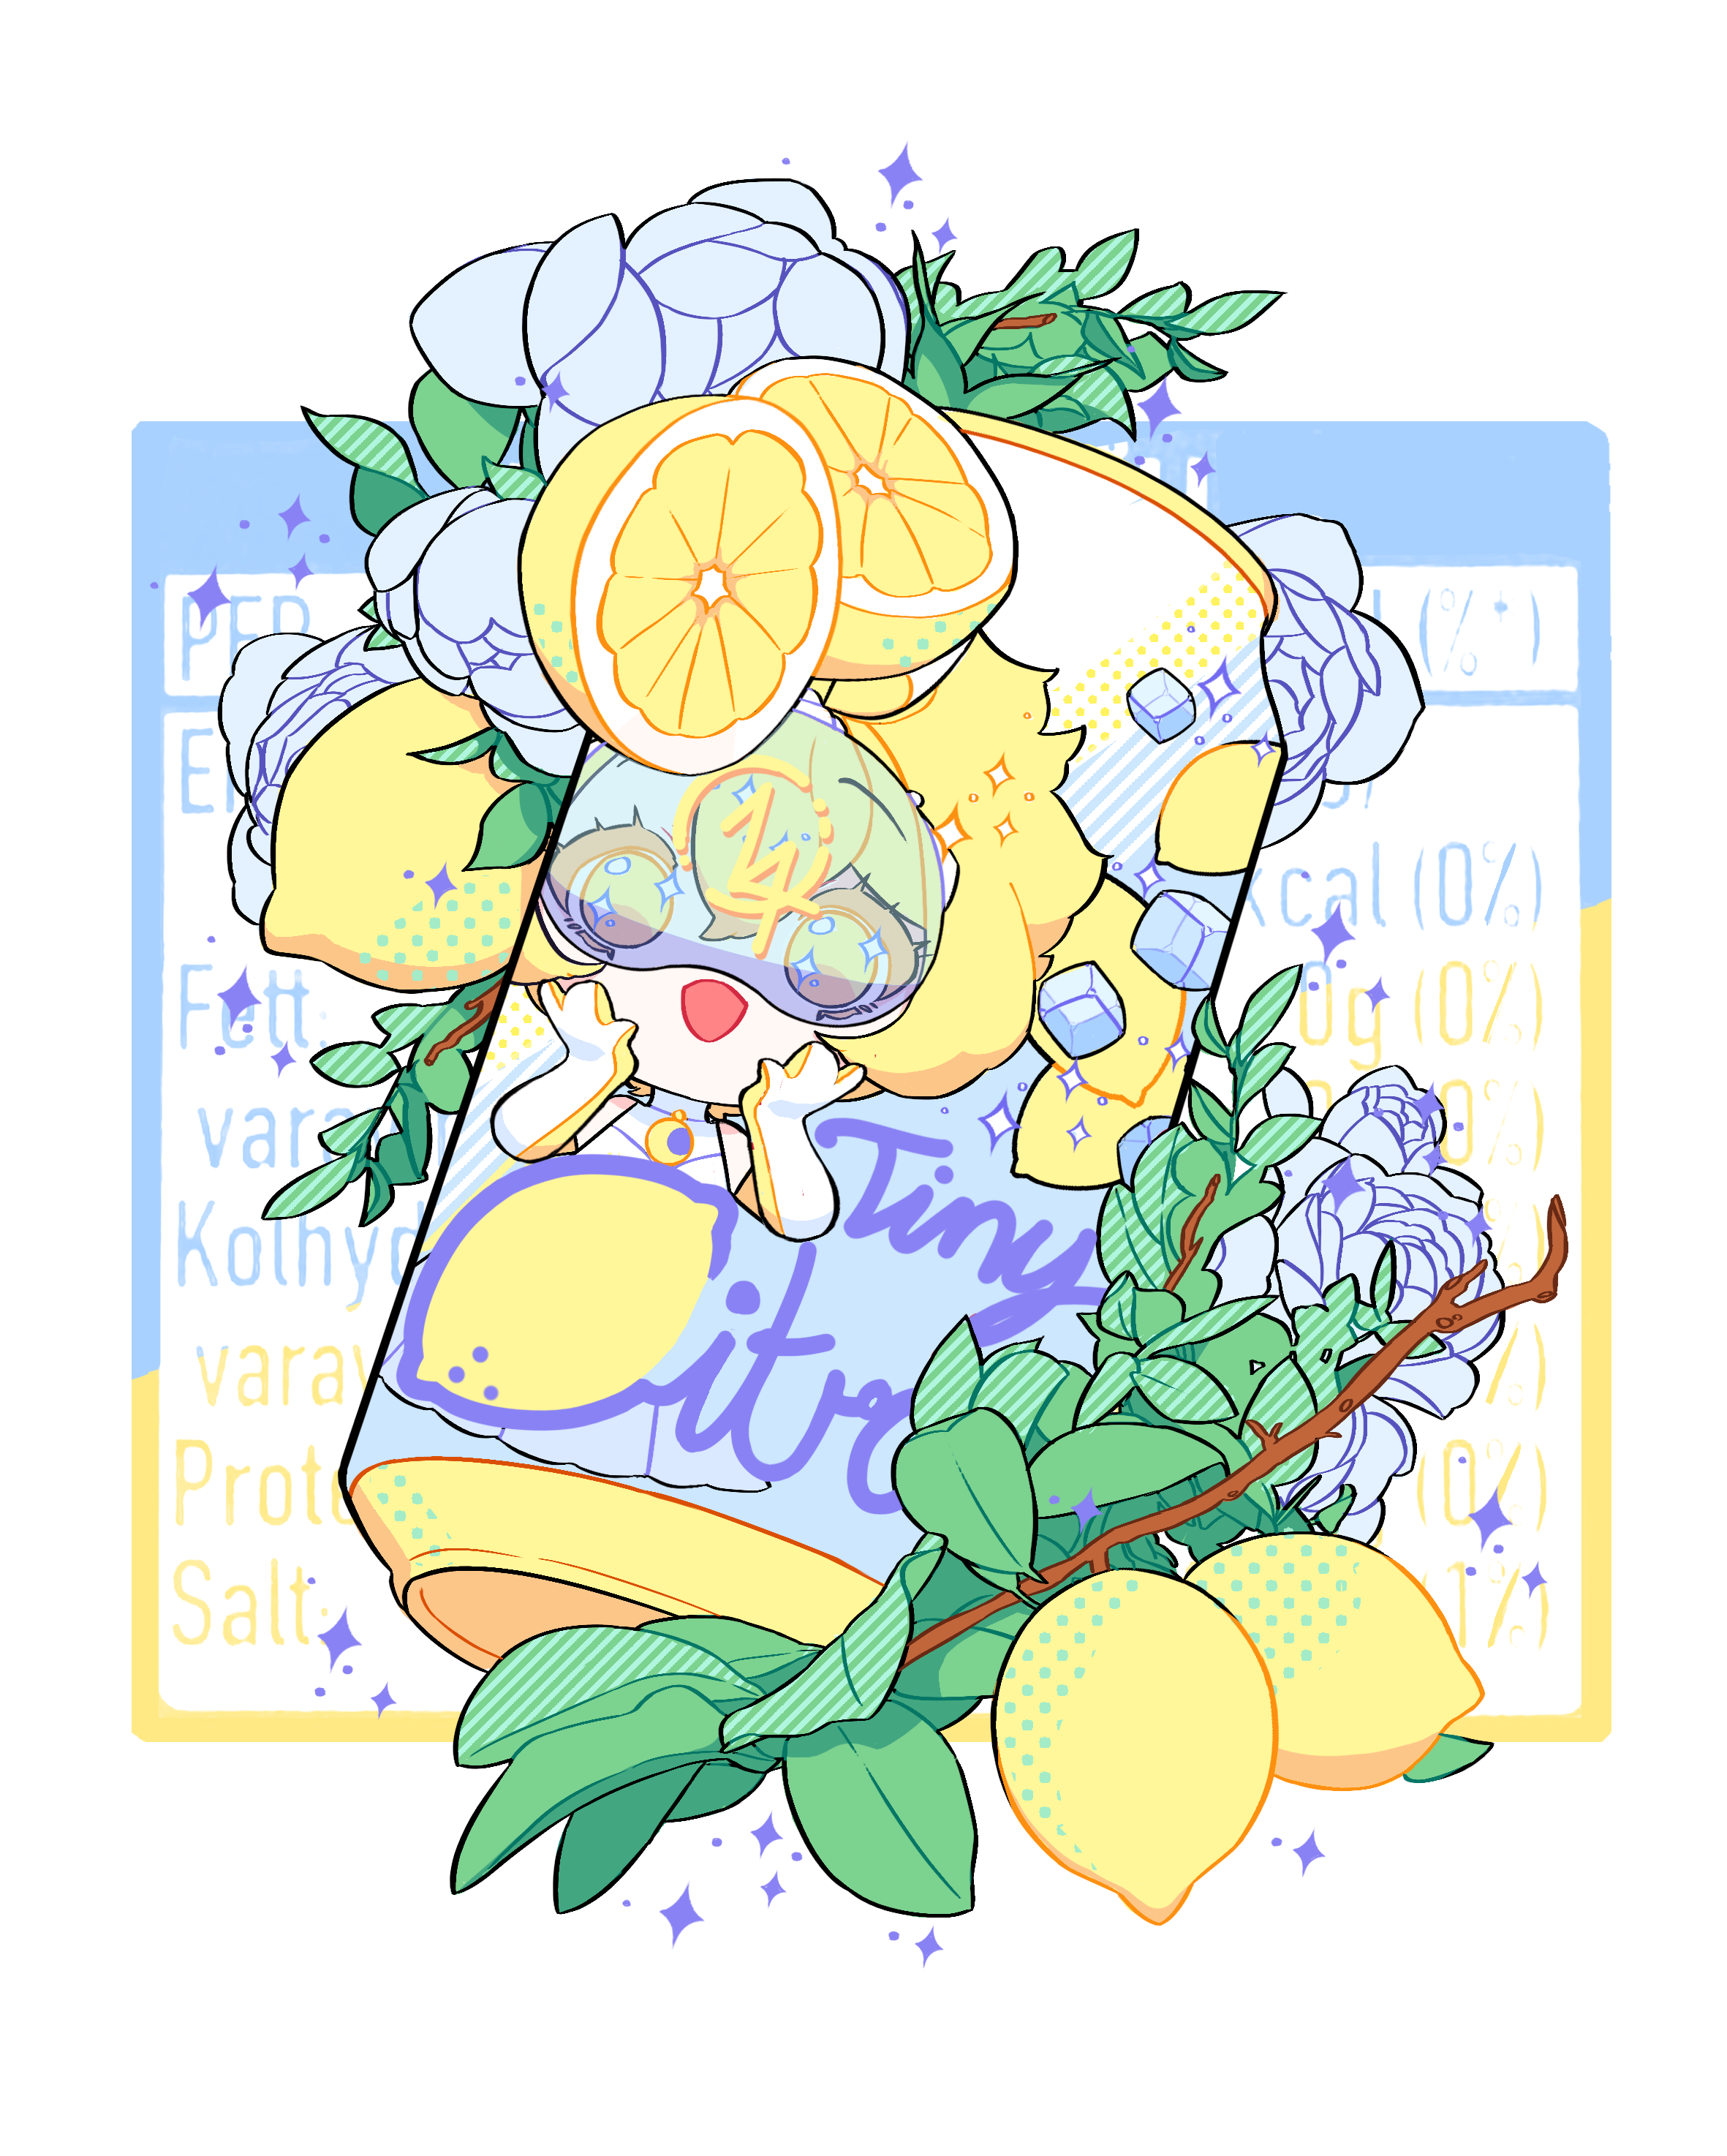 Cold lemon soda